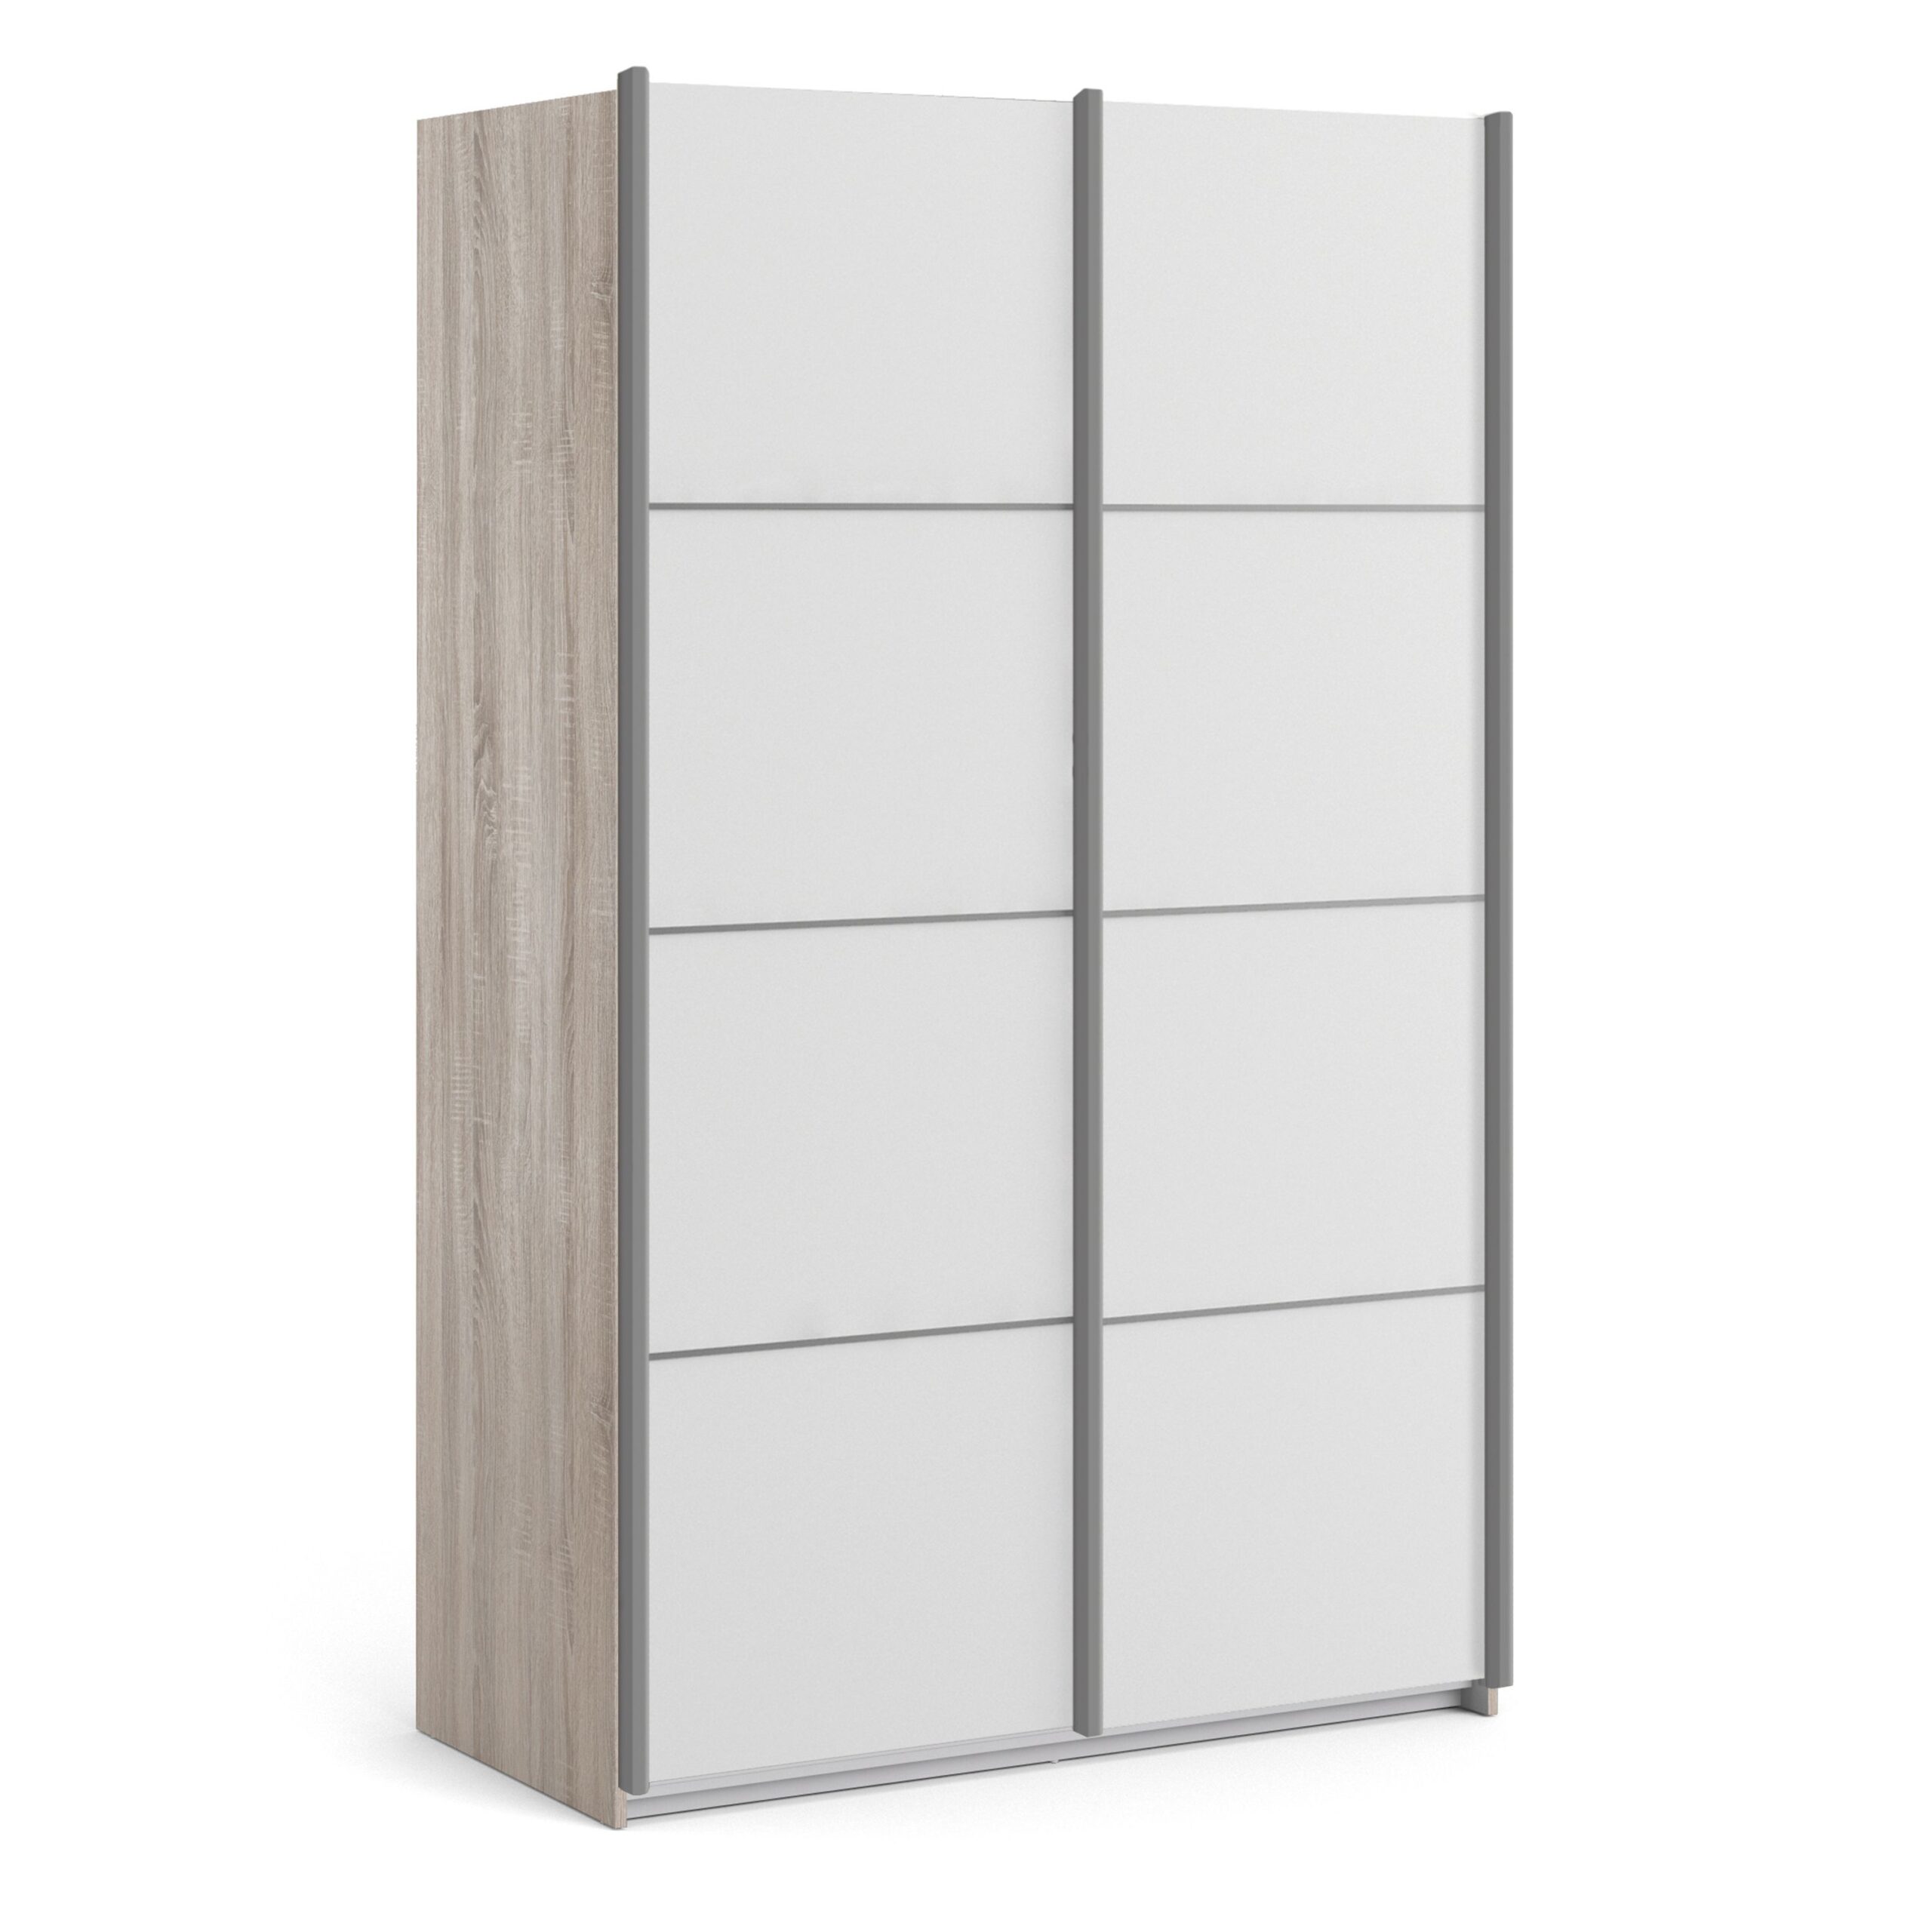 Phillipe Sliding Wardrobe 120cm in Truffle Oak with White Doors with 2 Shelves